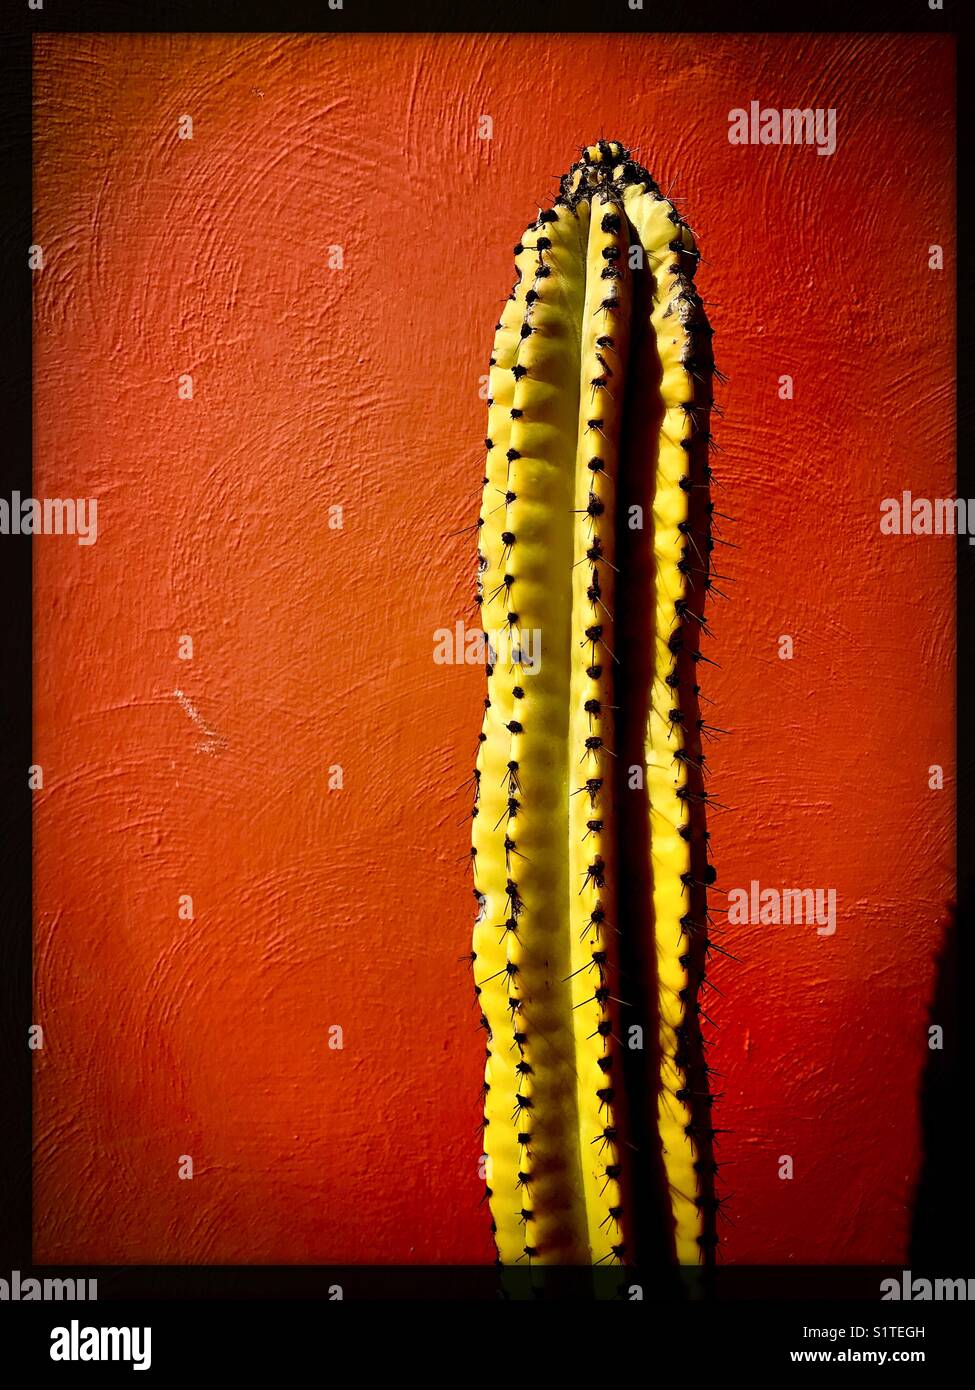 Eine hohe, schmale, stacheligen Kaktus steht gegen eine Rote Wand. Stockfoto